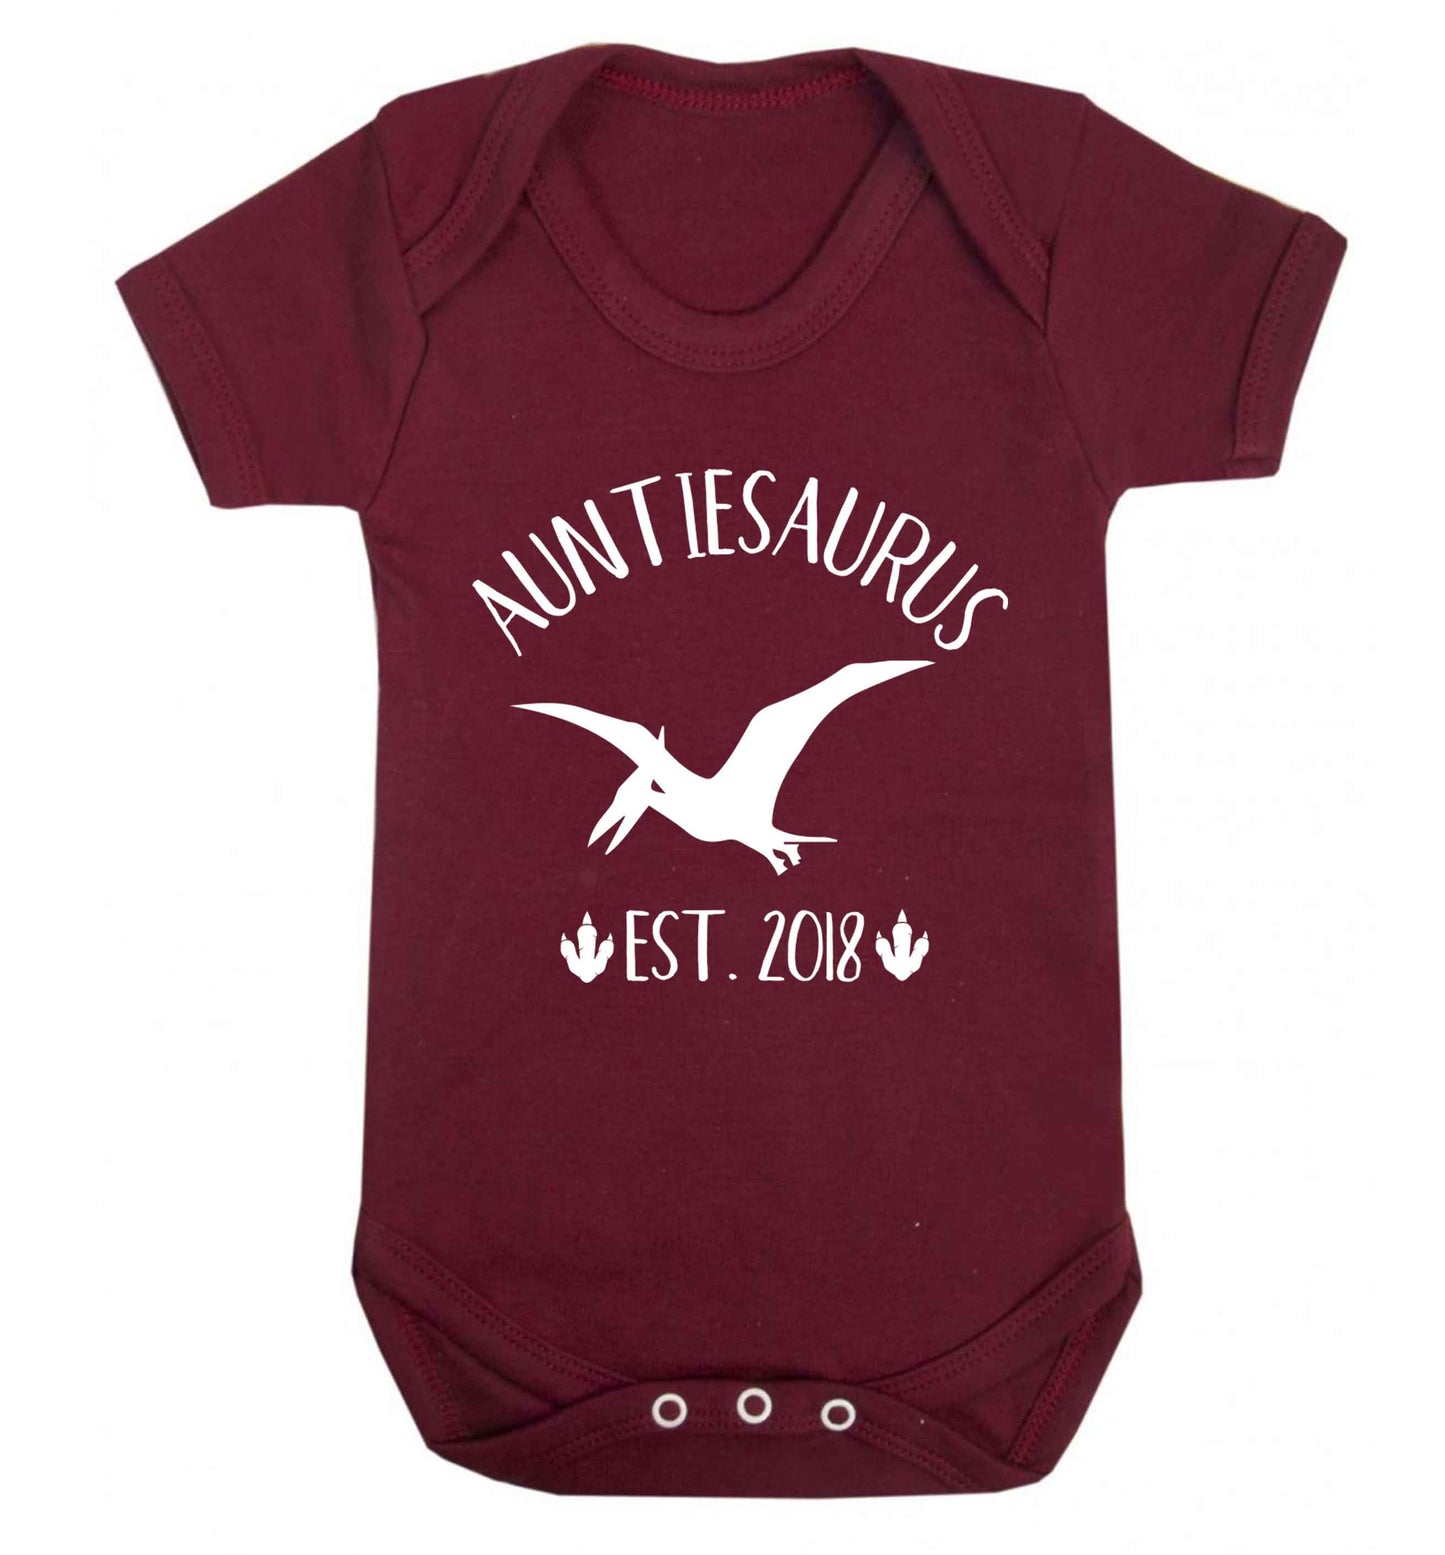 Personalised auntiesaurus since (custom date) Baby Vest maroon 18-24 months